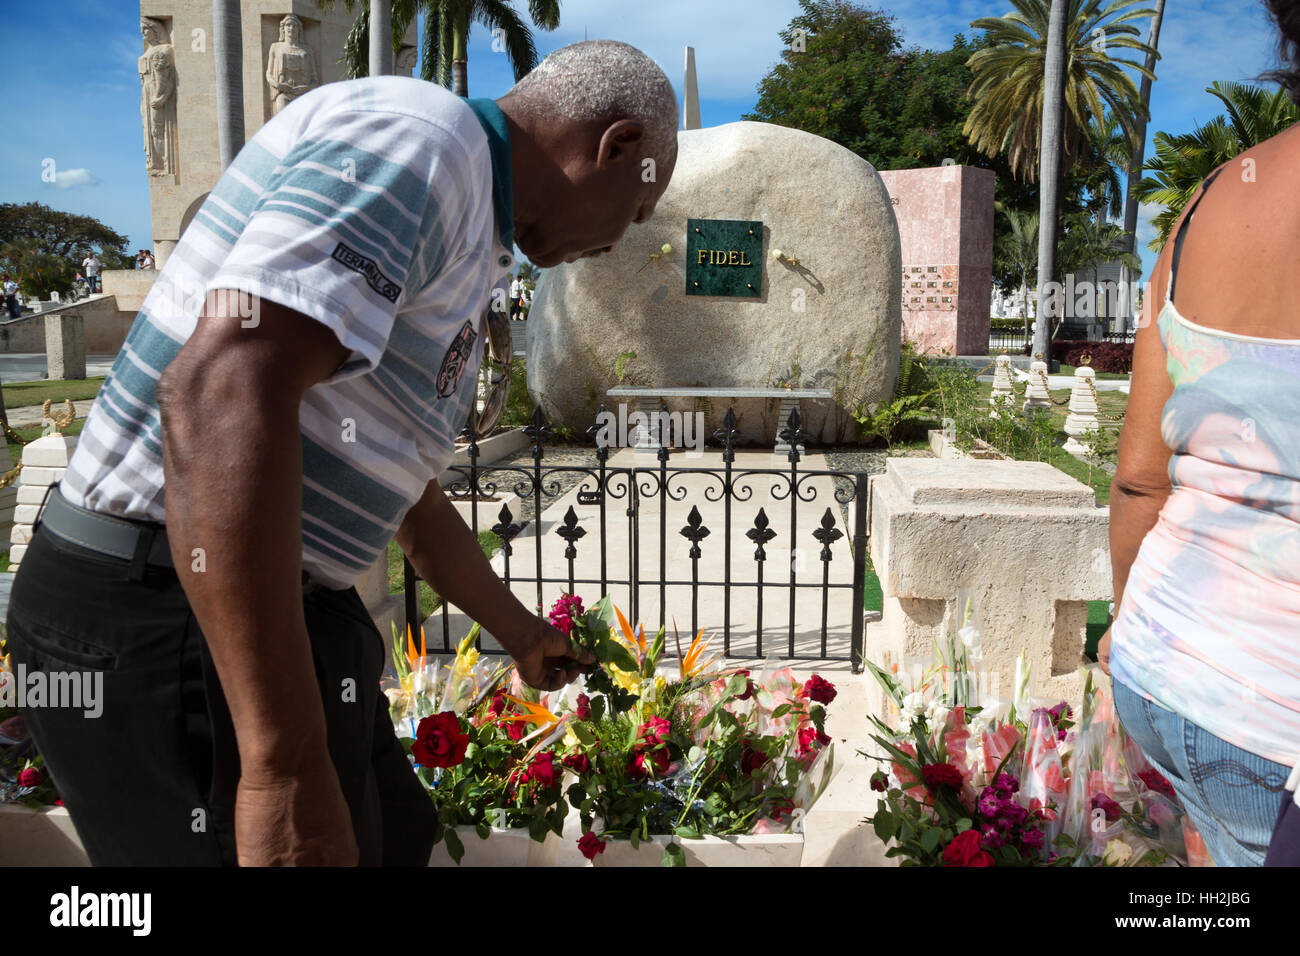 Fidel Castro ' s grave in Santa Ifigenia cemetery, Santiago de Cuba Stock Photo